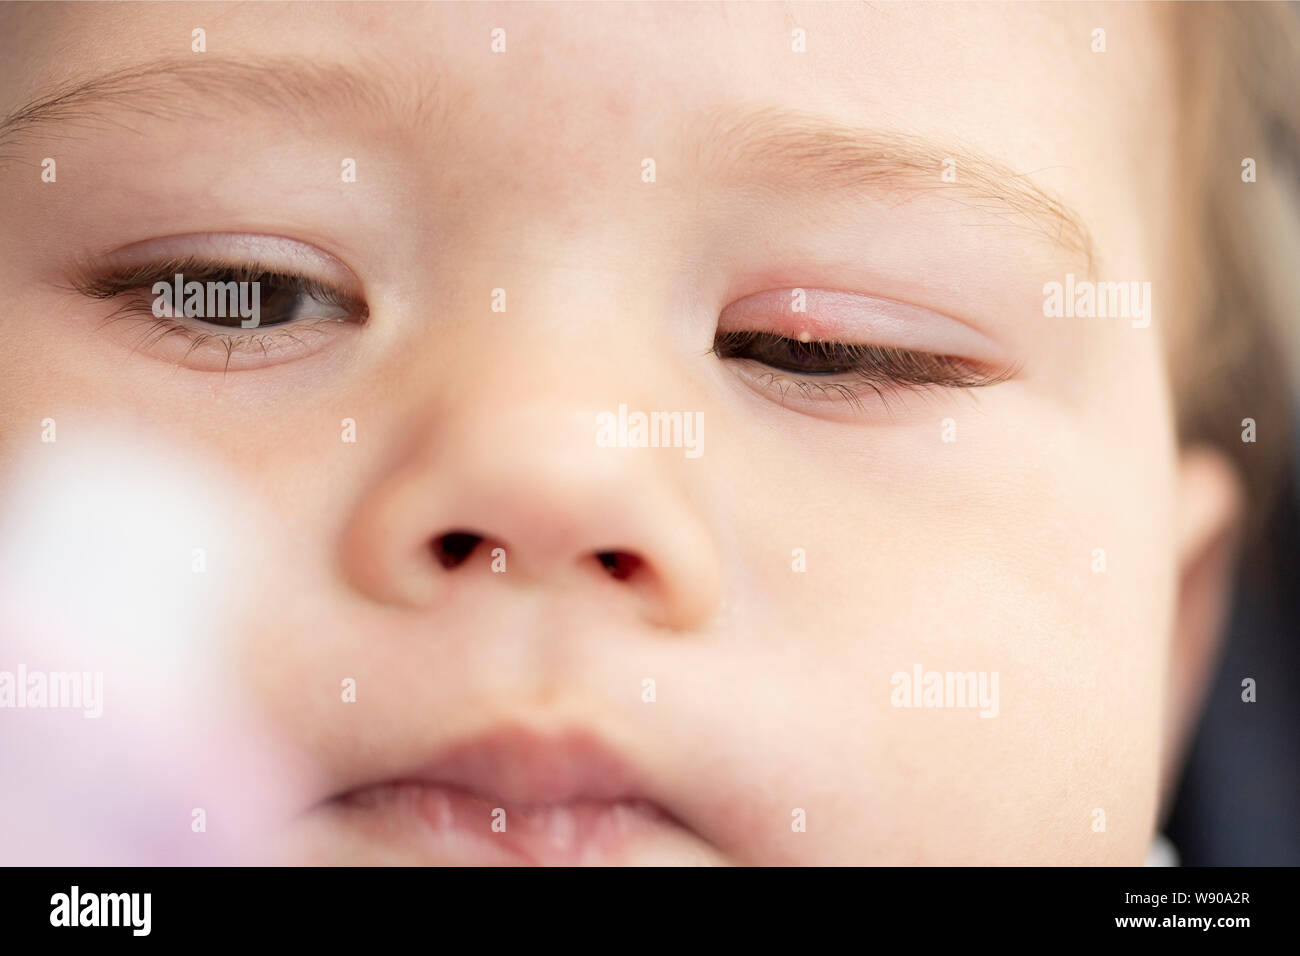 Weiße Pickel auf dem Augenlid eines kleinen Kindes. Entzündung des Auges milium Bindehautentzündung. Entzündungen der oberen Augenlid Soft Focus Stockfoto